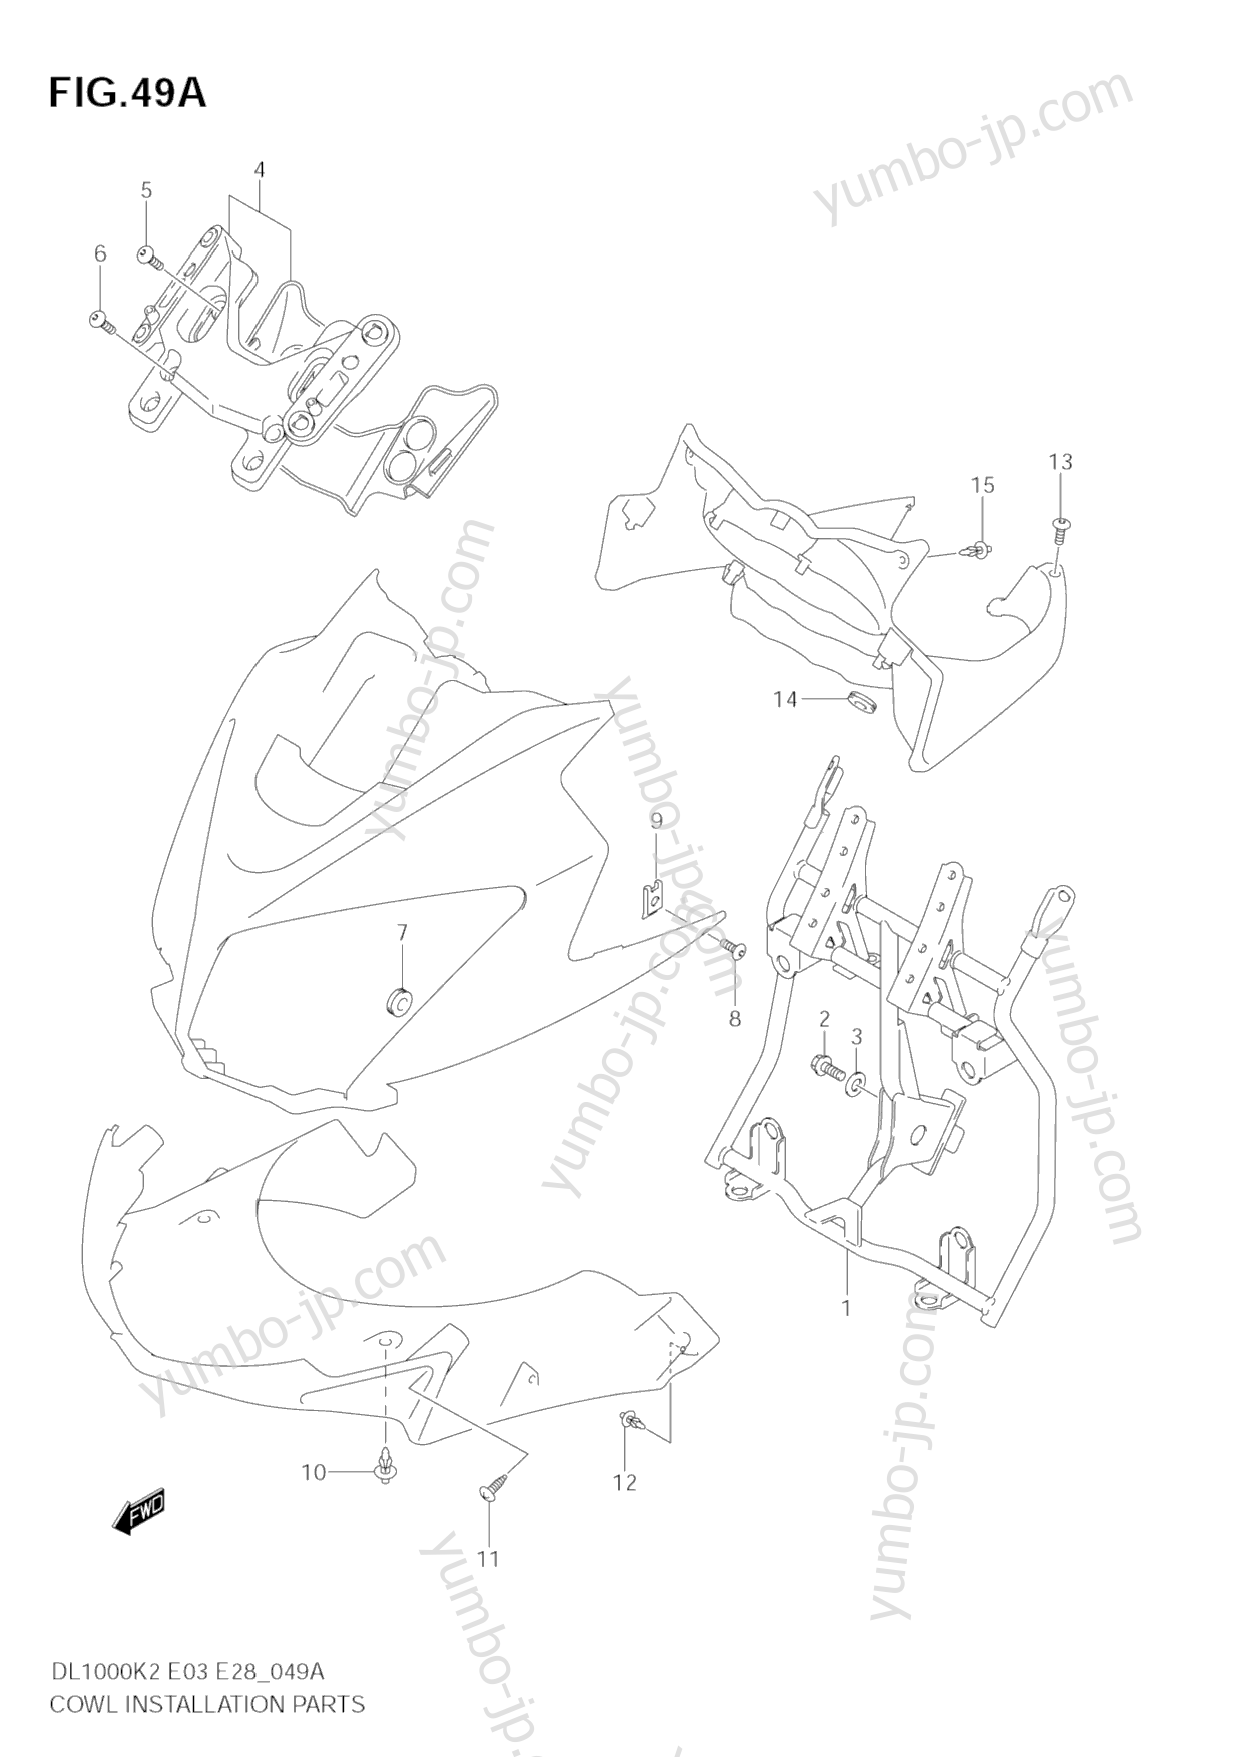 COWL BODY INSTALLATION PARTS (MODEL K4/K5/K6) for motorcycles SUZUKI V-Strom (DL1000) 2003 year